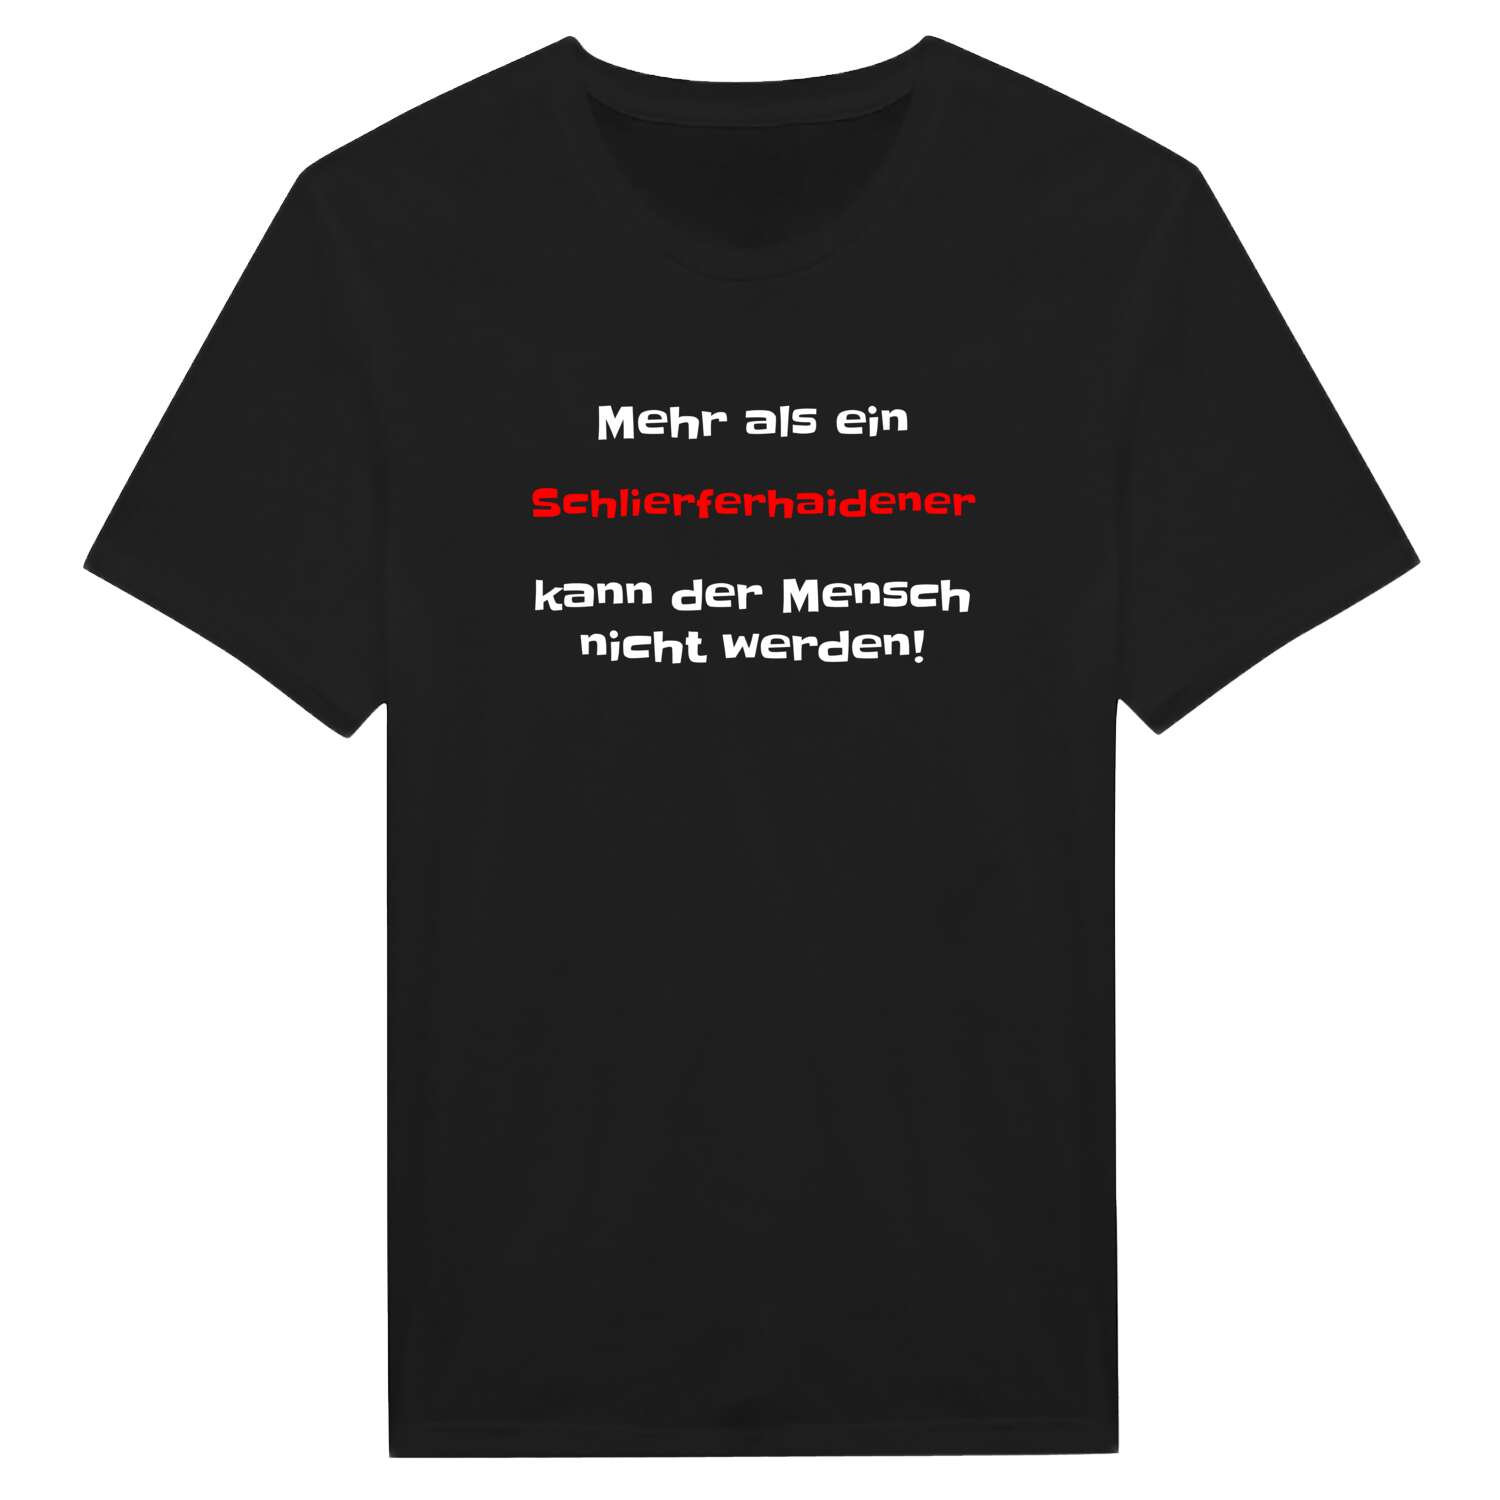 Schlierferhaide T-Shirt »Mehr als ein«